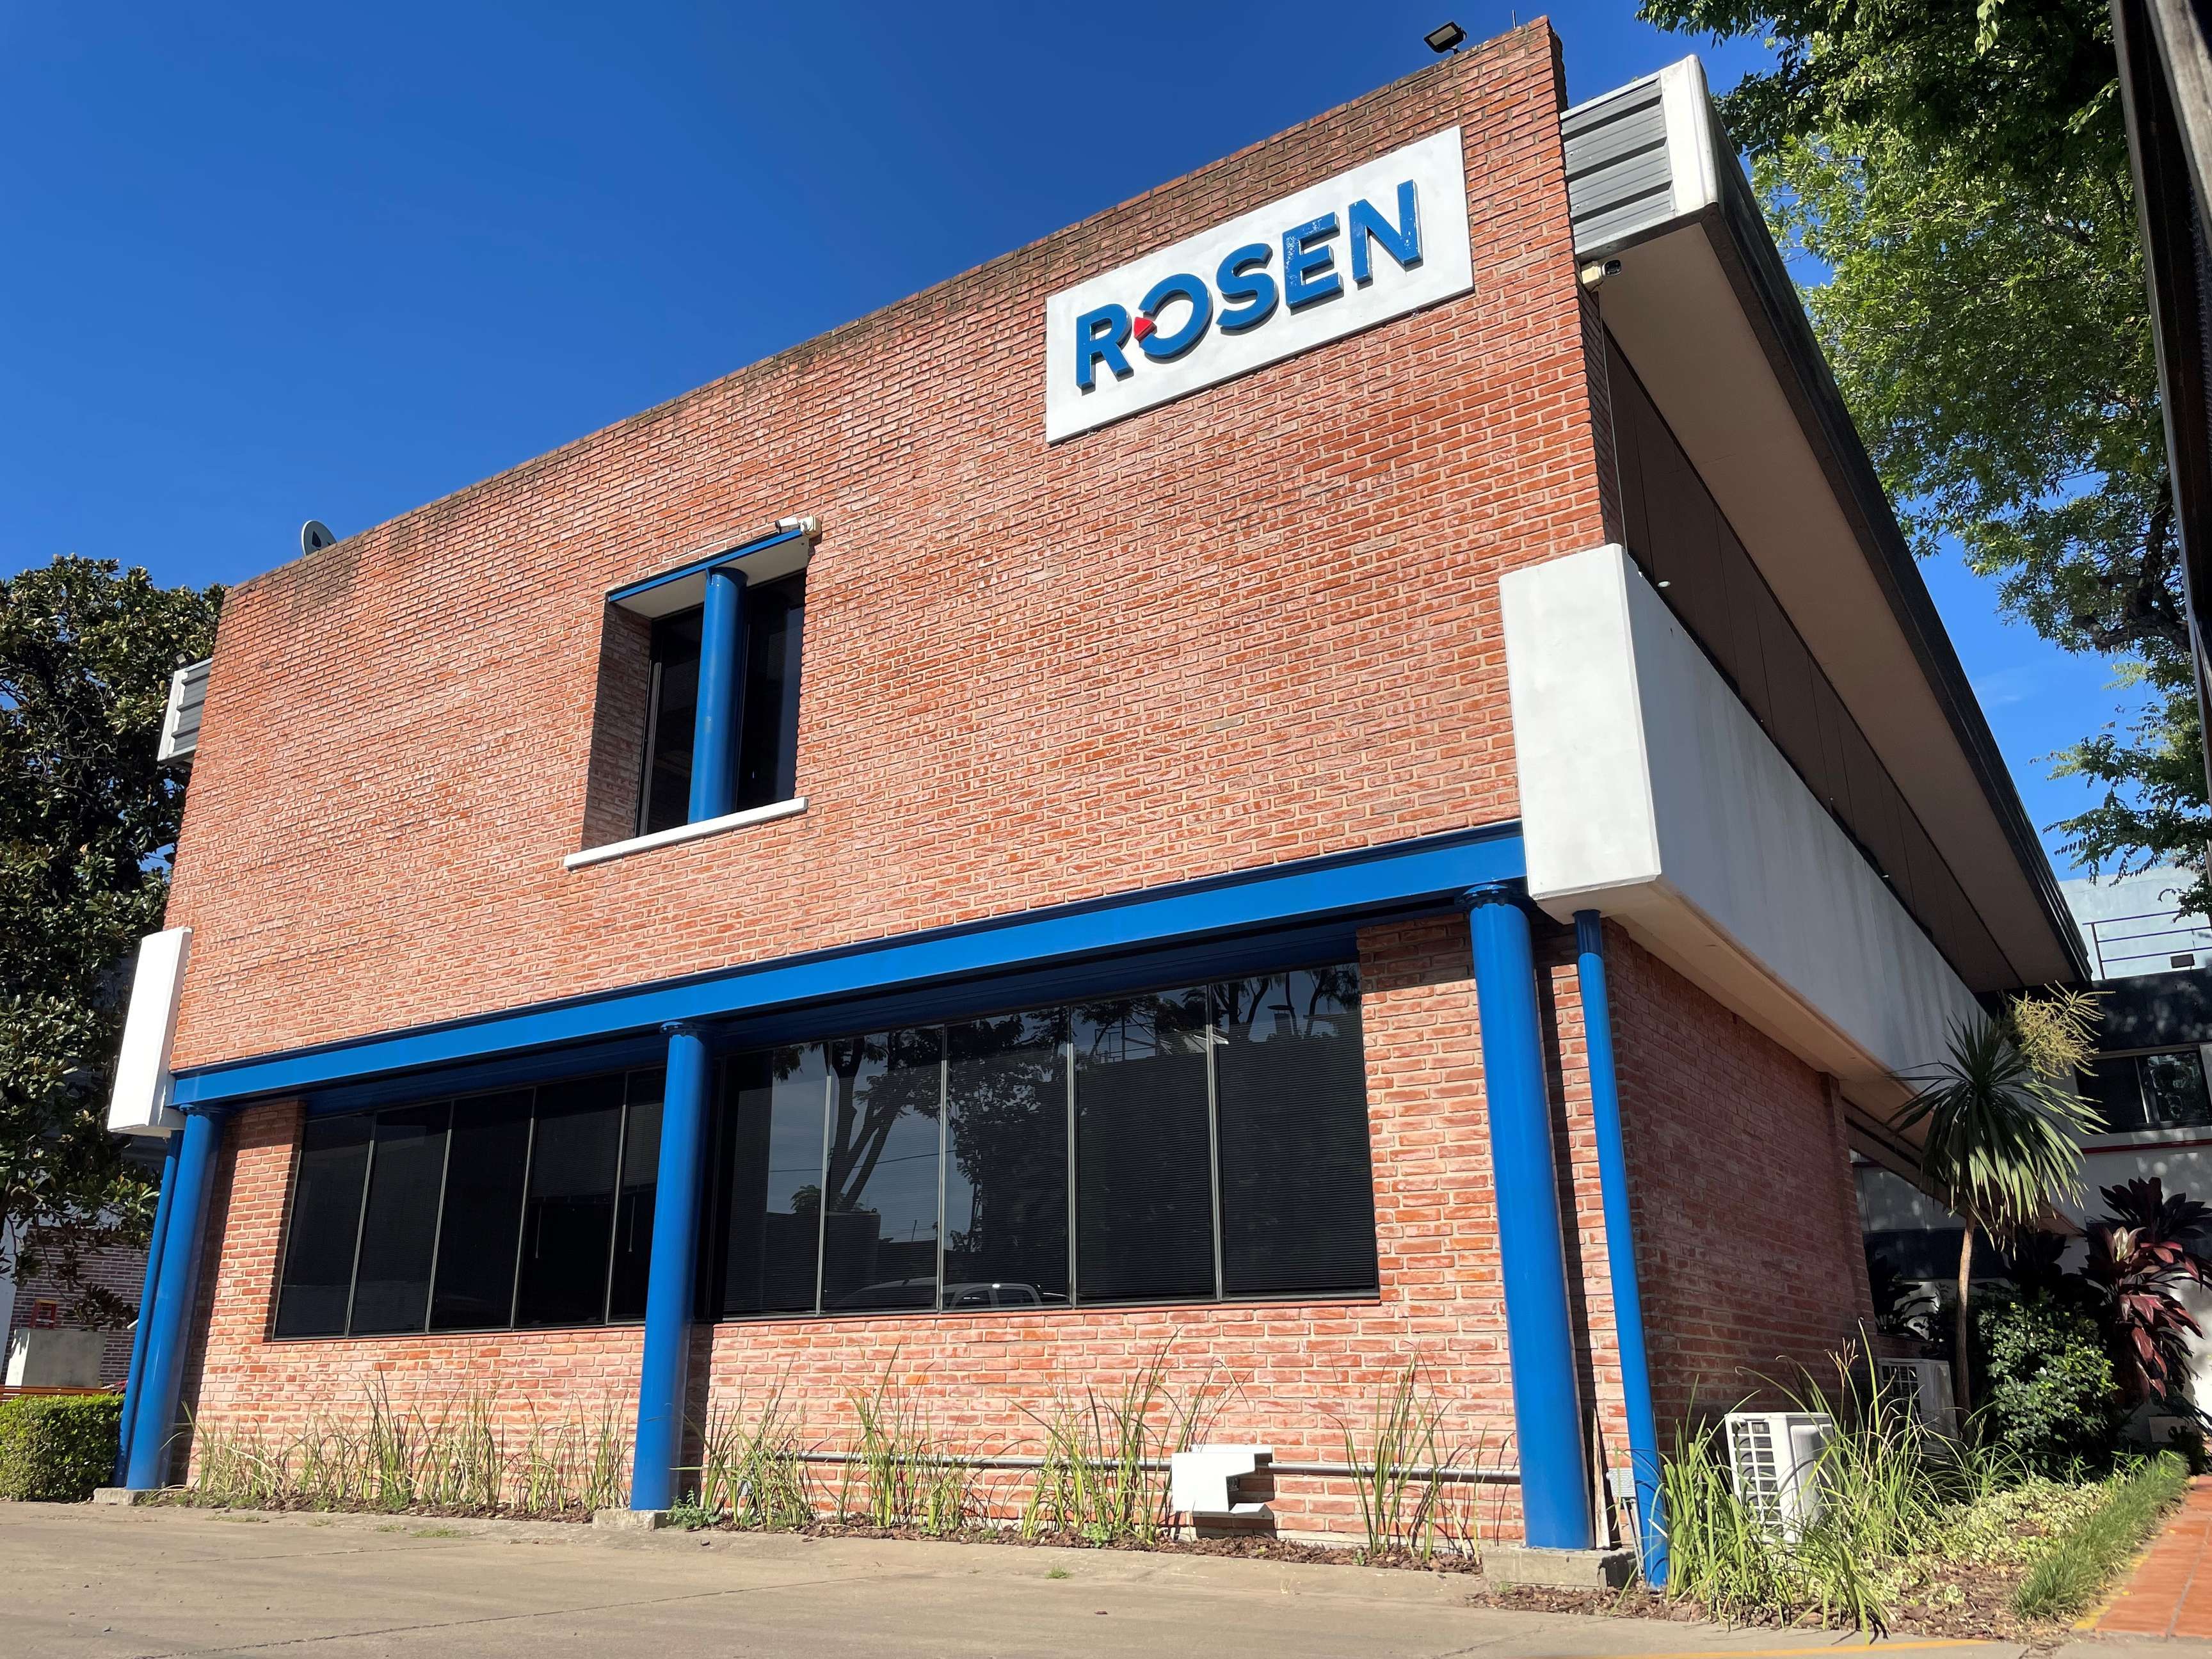 ROSEN location in Buenos Aires, Argentina.